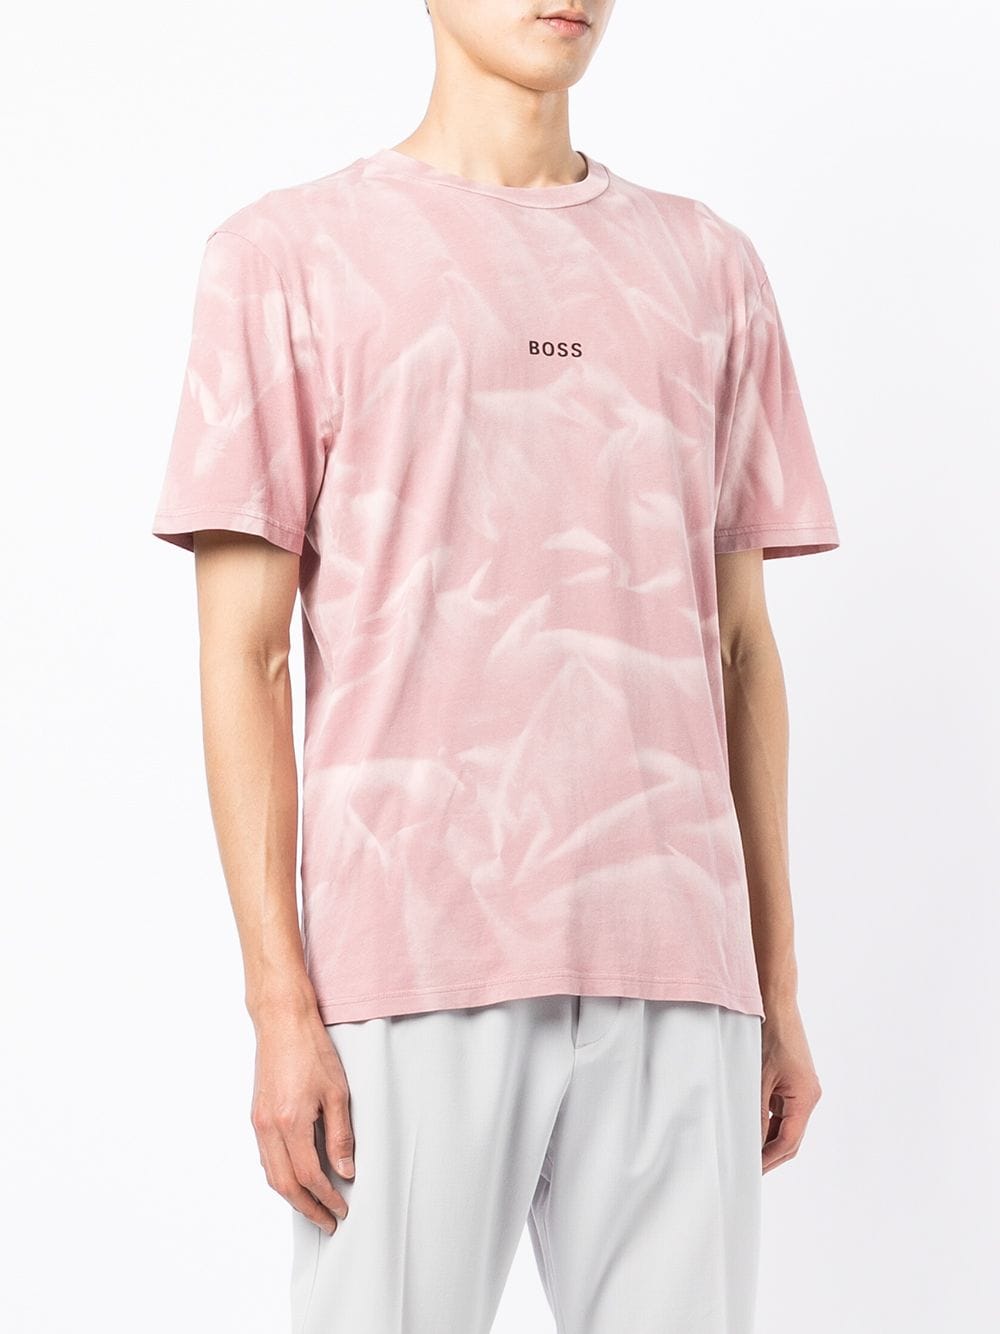 BOSS Smoke print T-shirt Pink - MAISONDEFASHION.COM